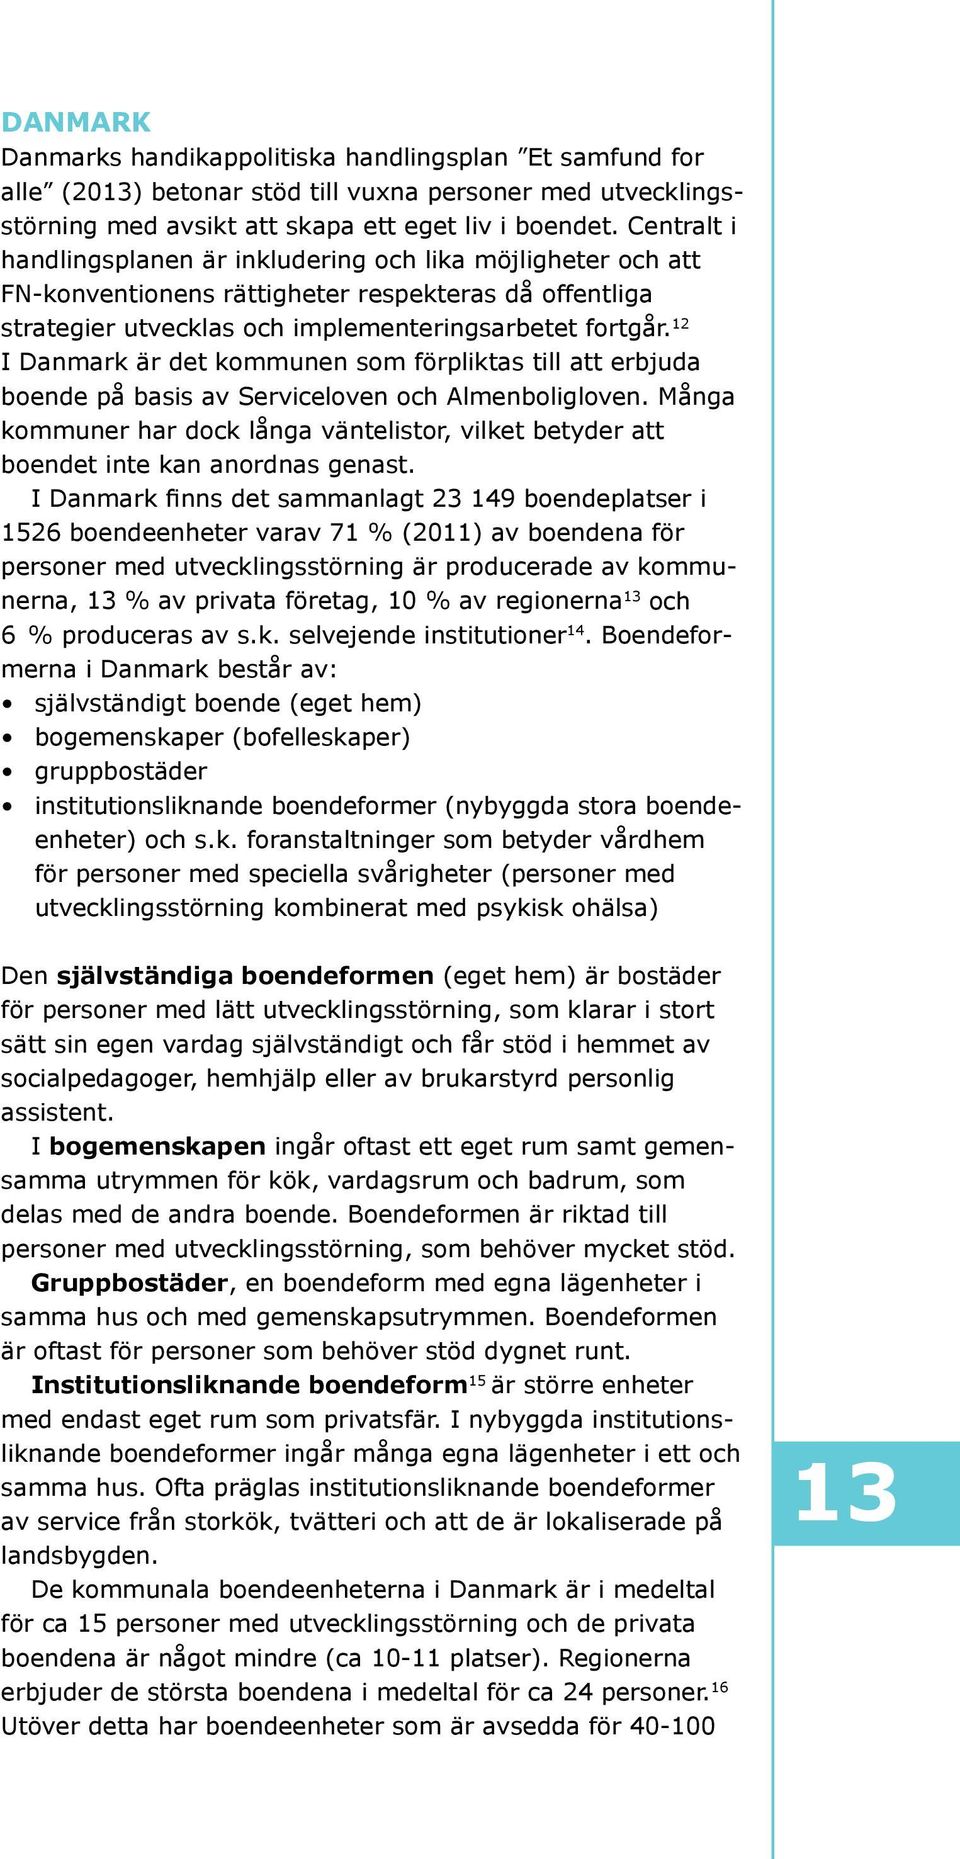 12 I Danmark är det kommunen som förpliktas till att erbjuda boende på basis av Serviceloven och Almenboligloven.